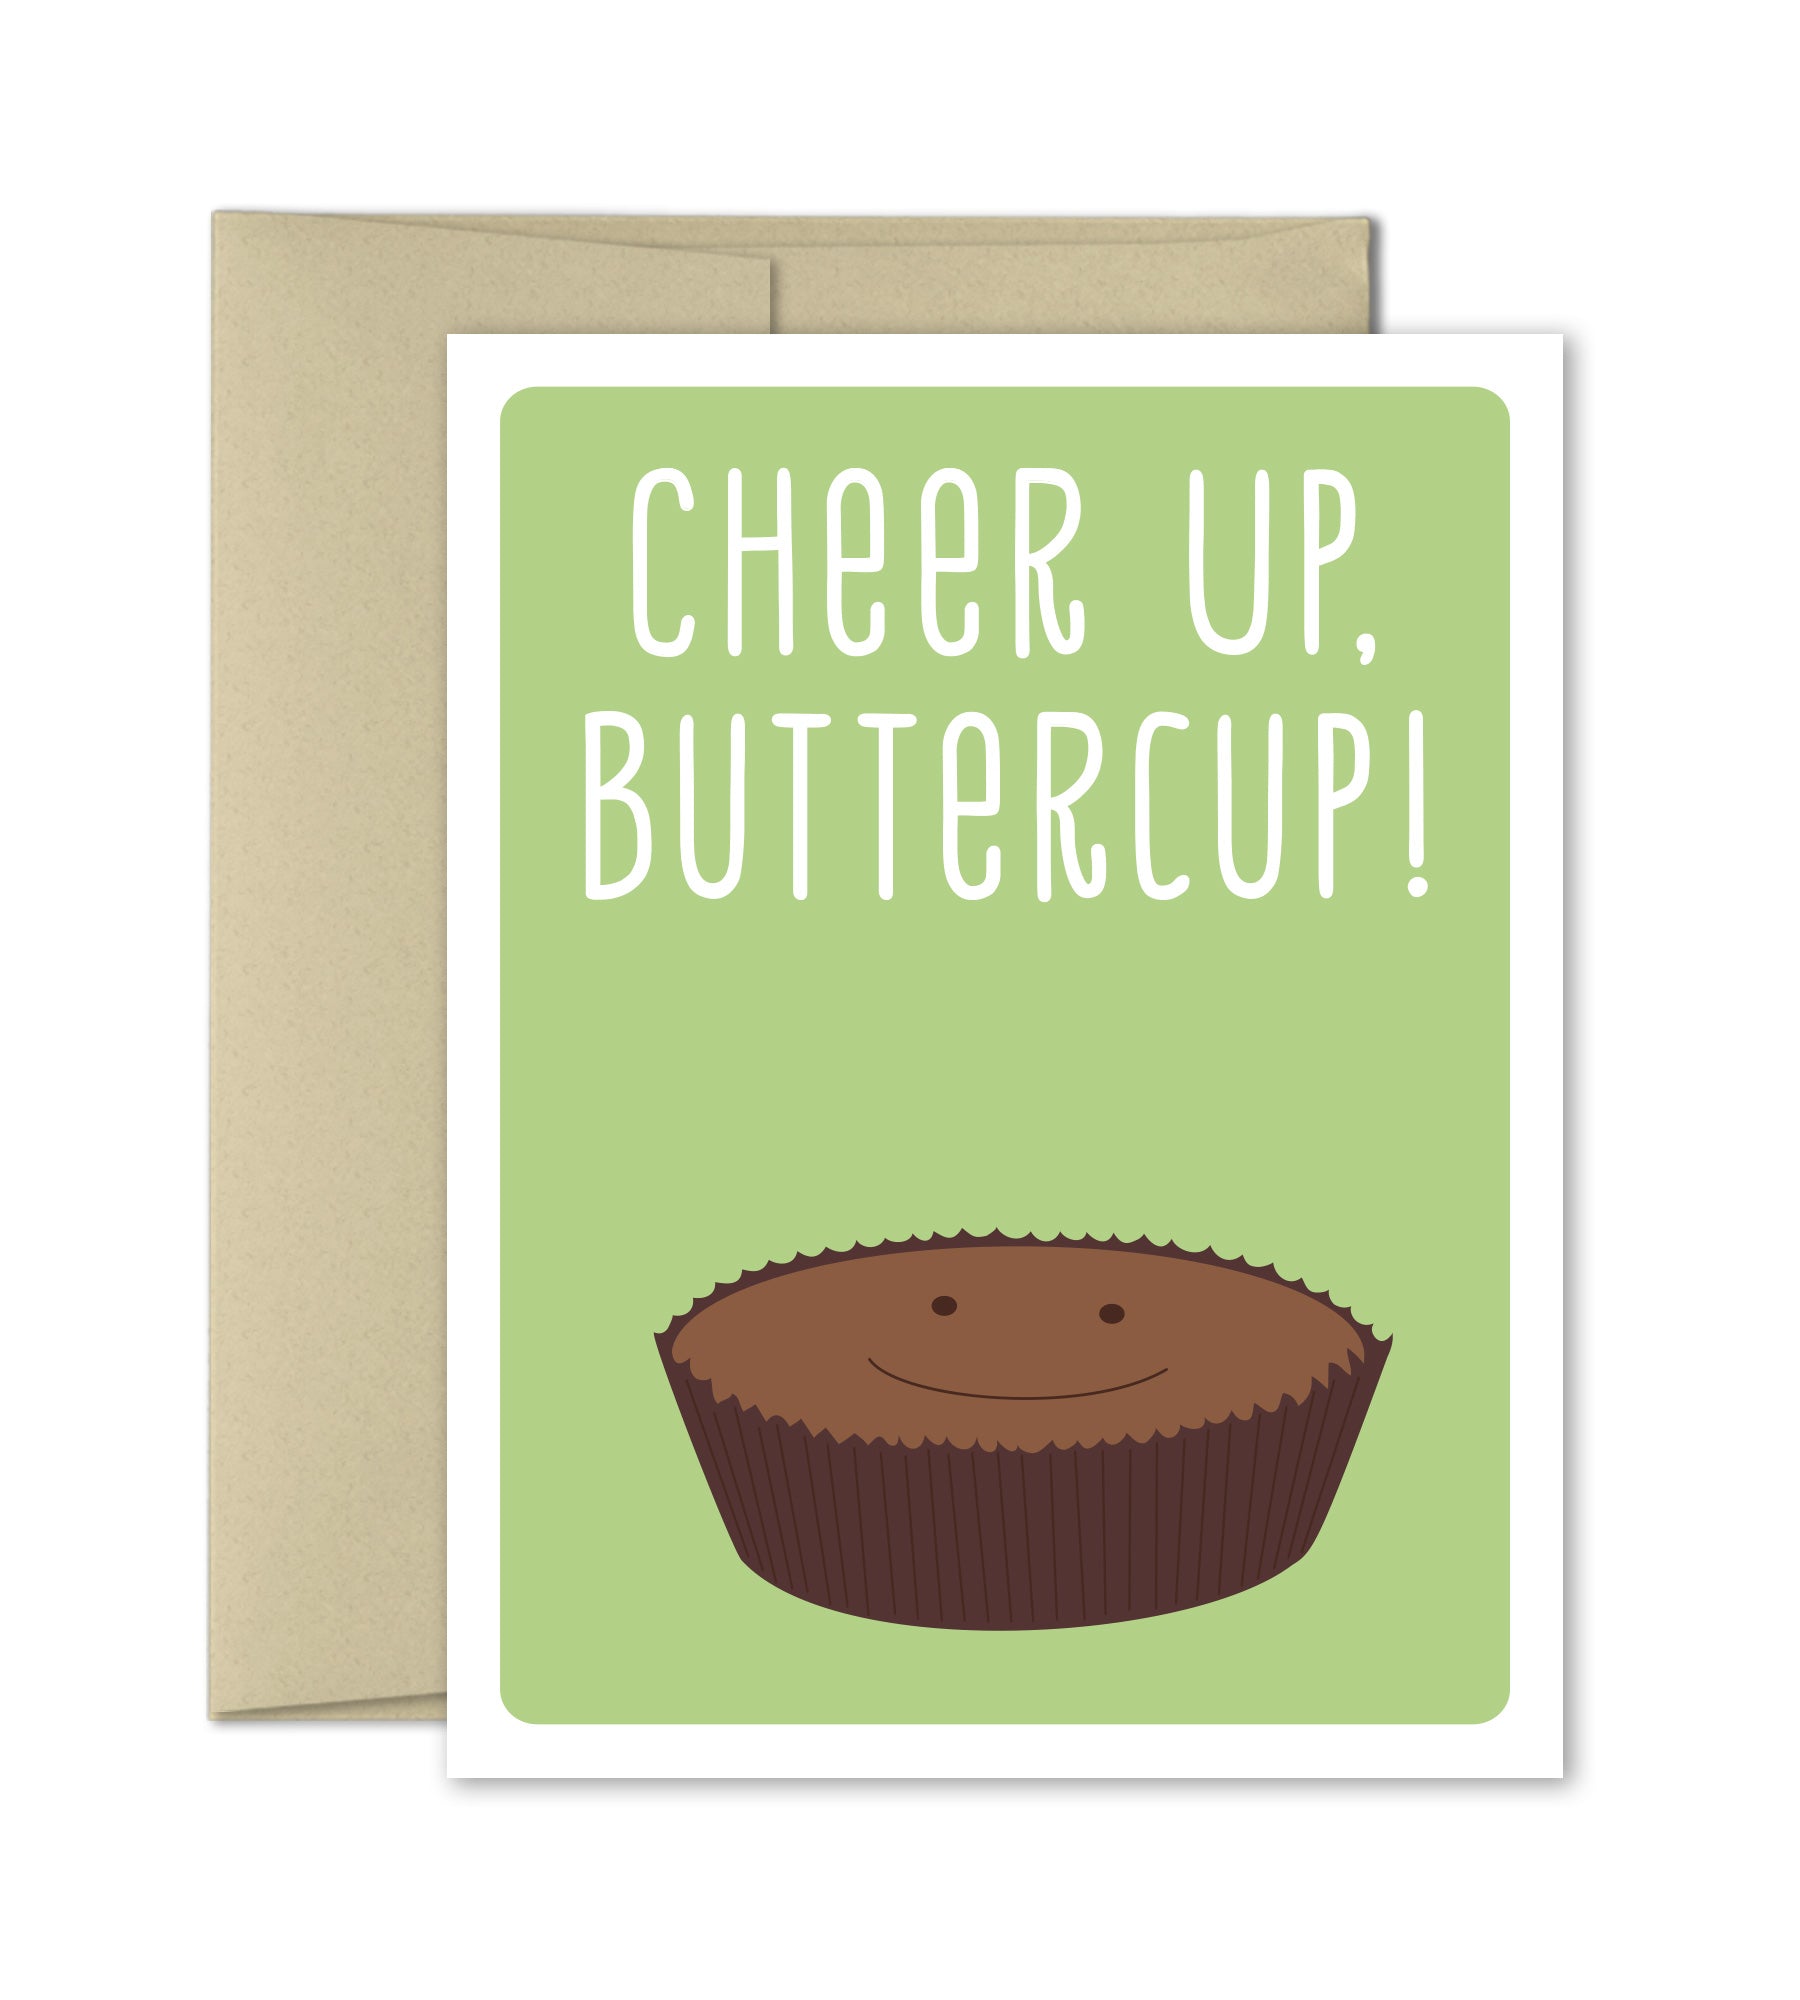 Cheer Up Buttercup - Feel Better Card - Encouragement Card